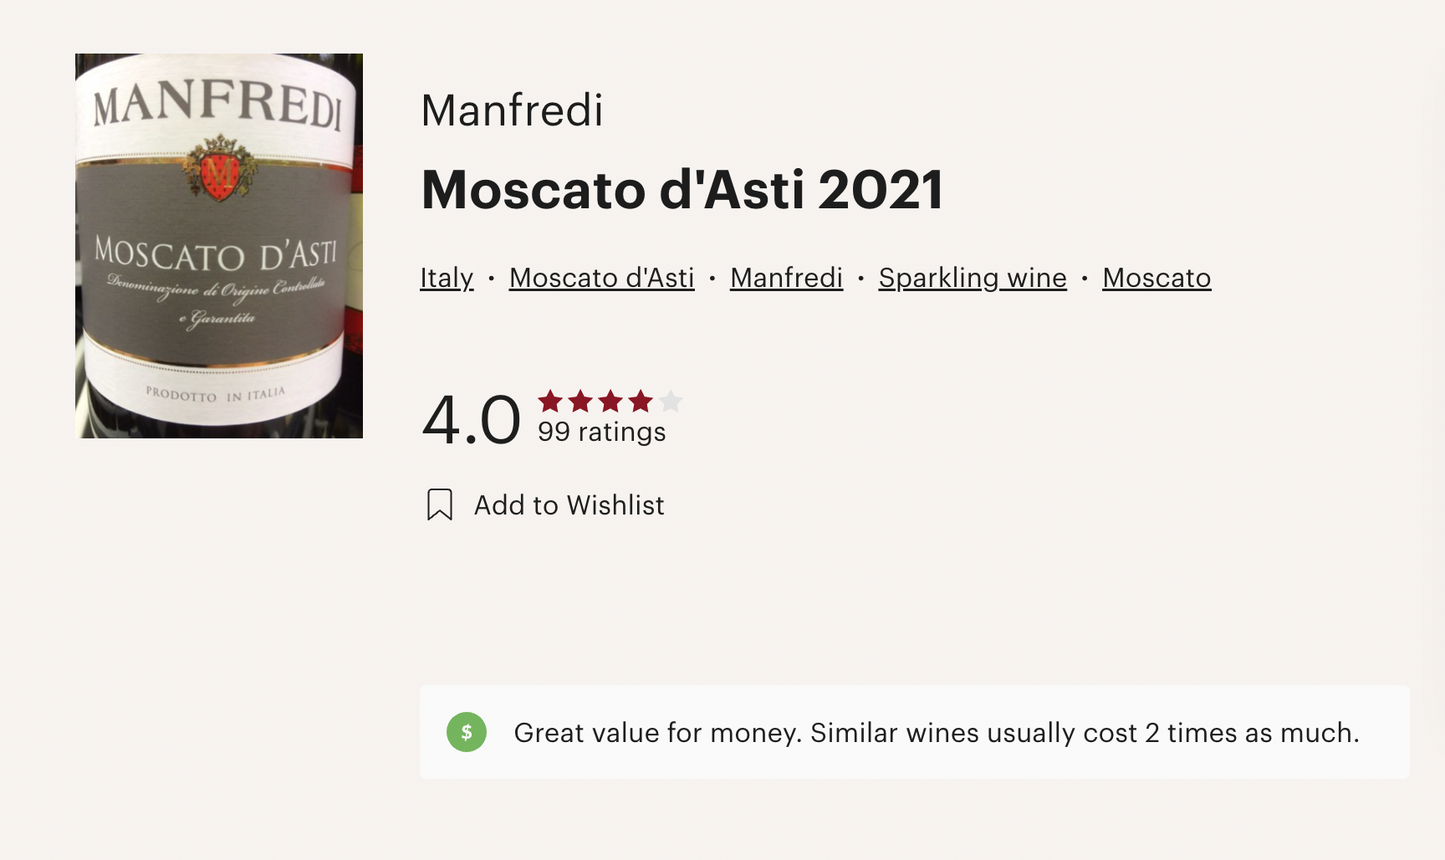 意大利 Manfredi Moscato d'Asti DOCG 2021 氣泡白酒